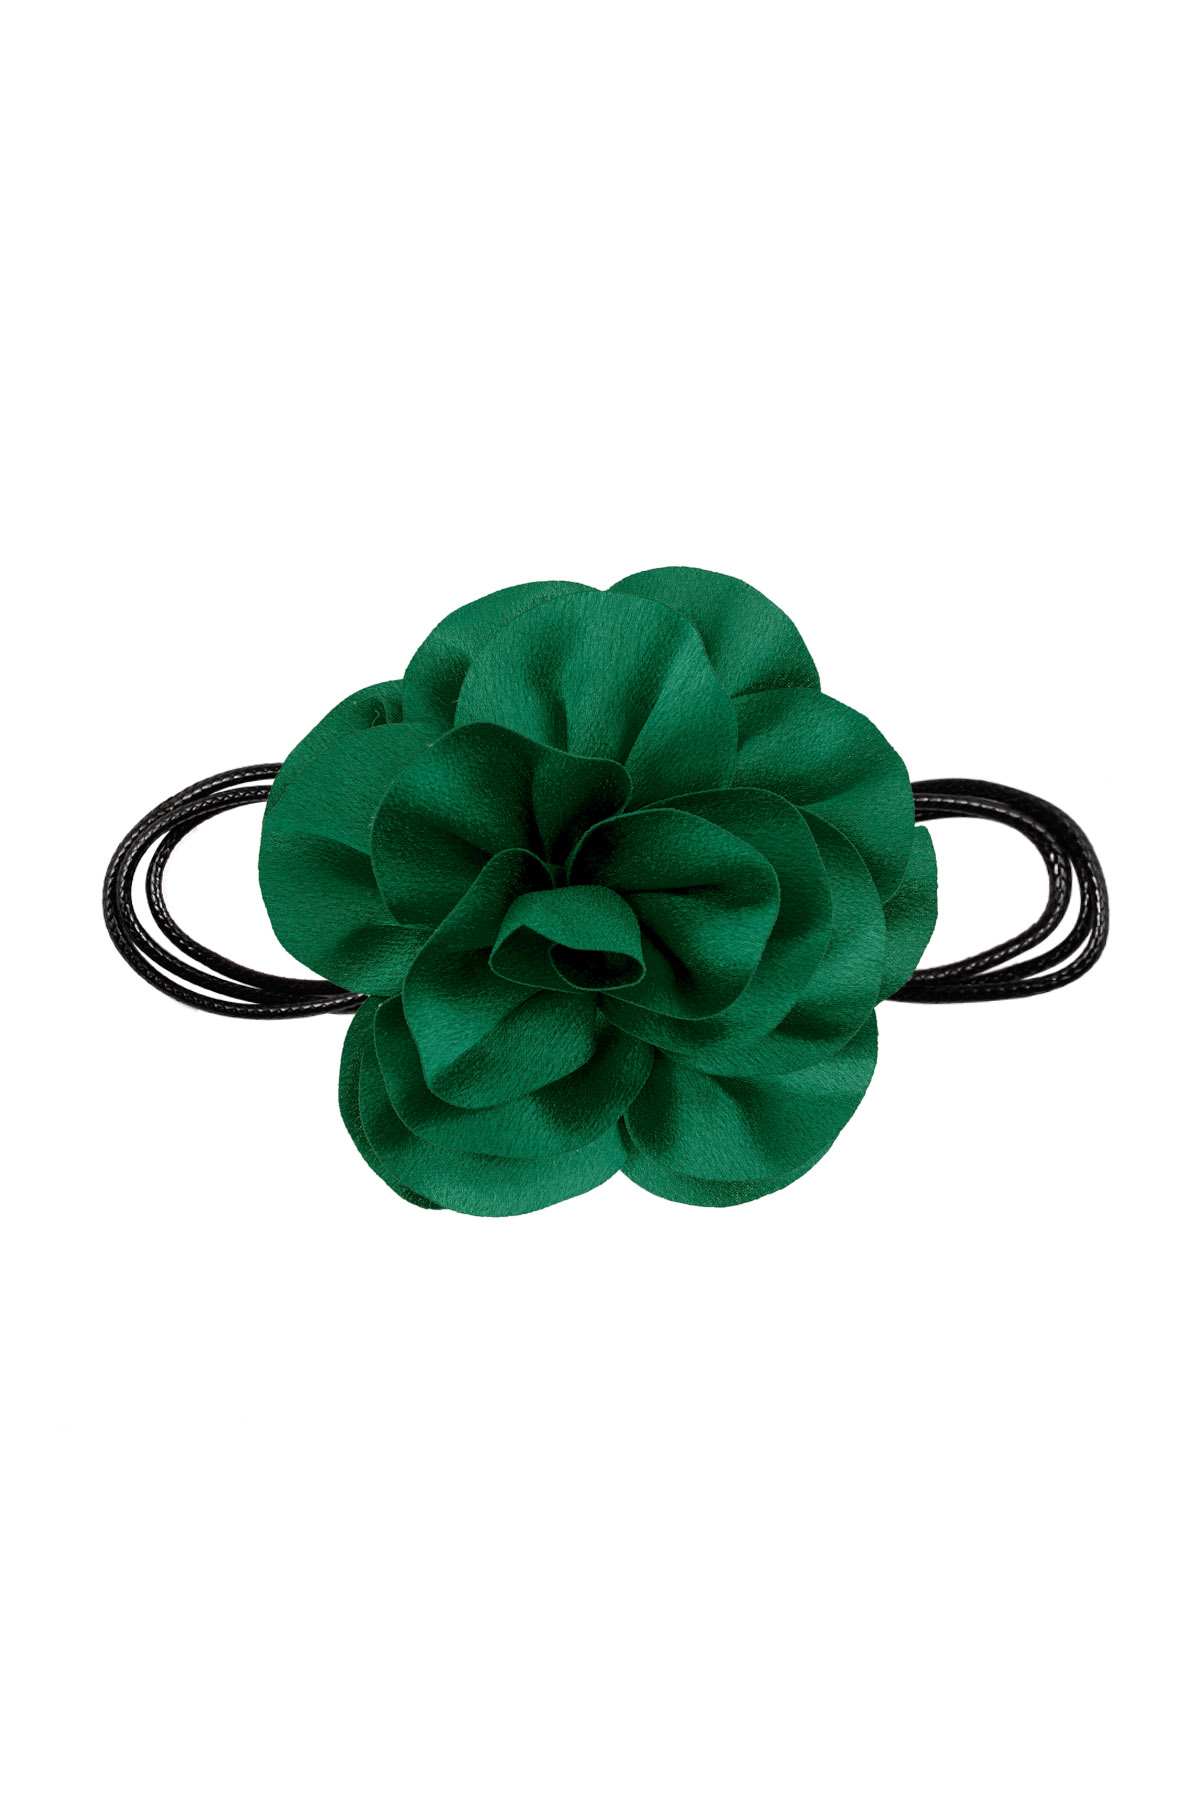 Cadena cuerda flor brillante - verde h5 